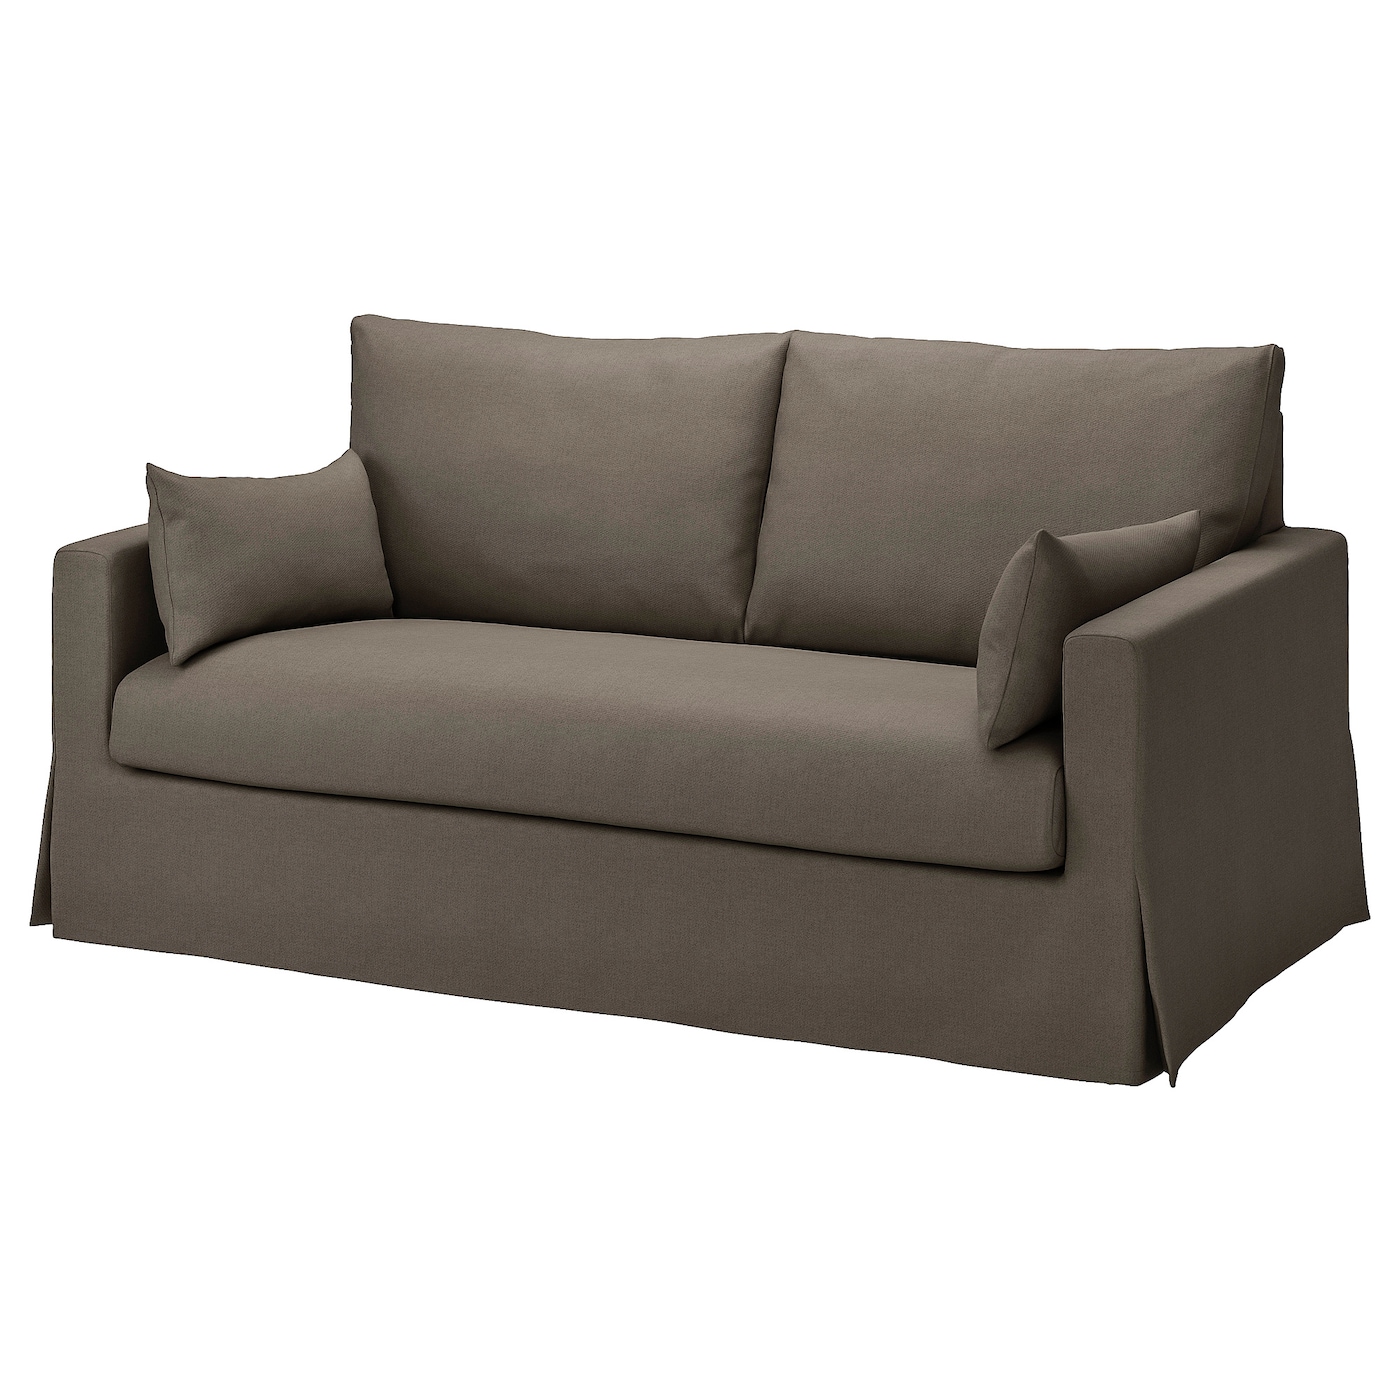 Чехол на 2-местный диван - HYLTARP IKEA/ ХУЛТАРП ИКЕА, коричневый